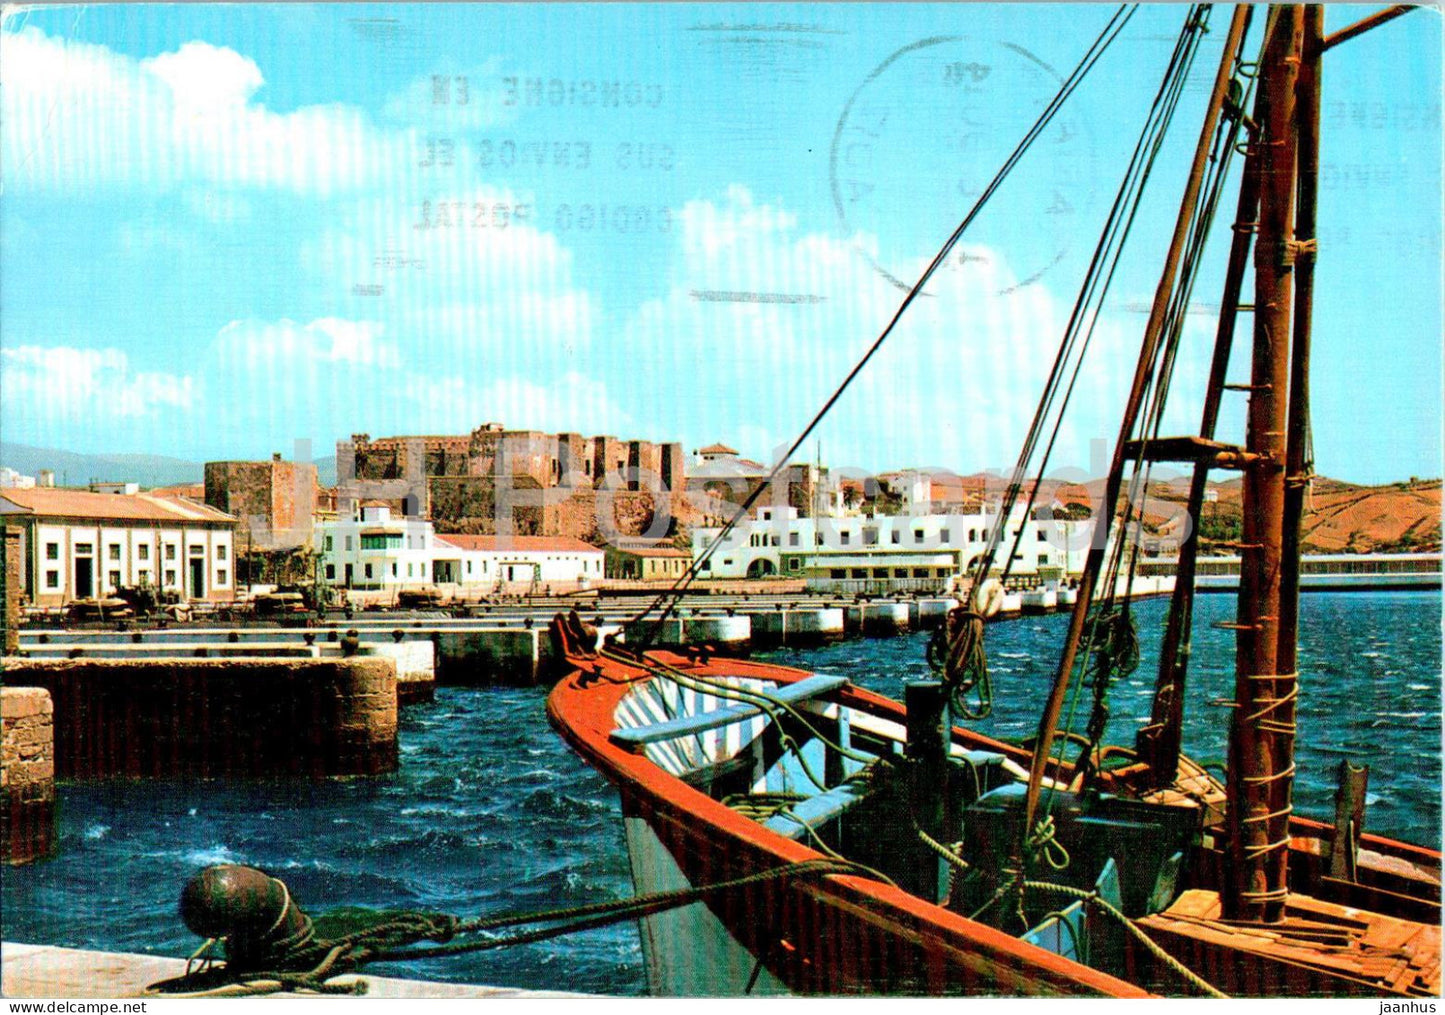 Tarifa - Puerto Pesquero y Castillo de Guzman El Bueno - Fishing port - castle - ship - boat - Spain - used - JH Postcards